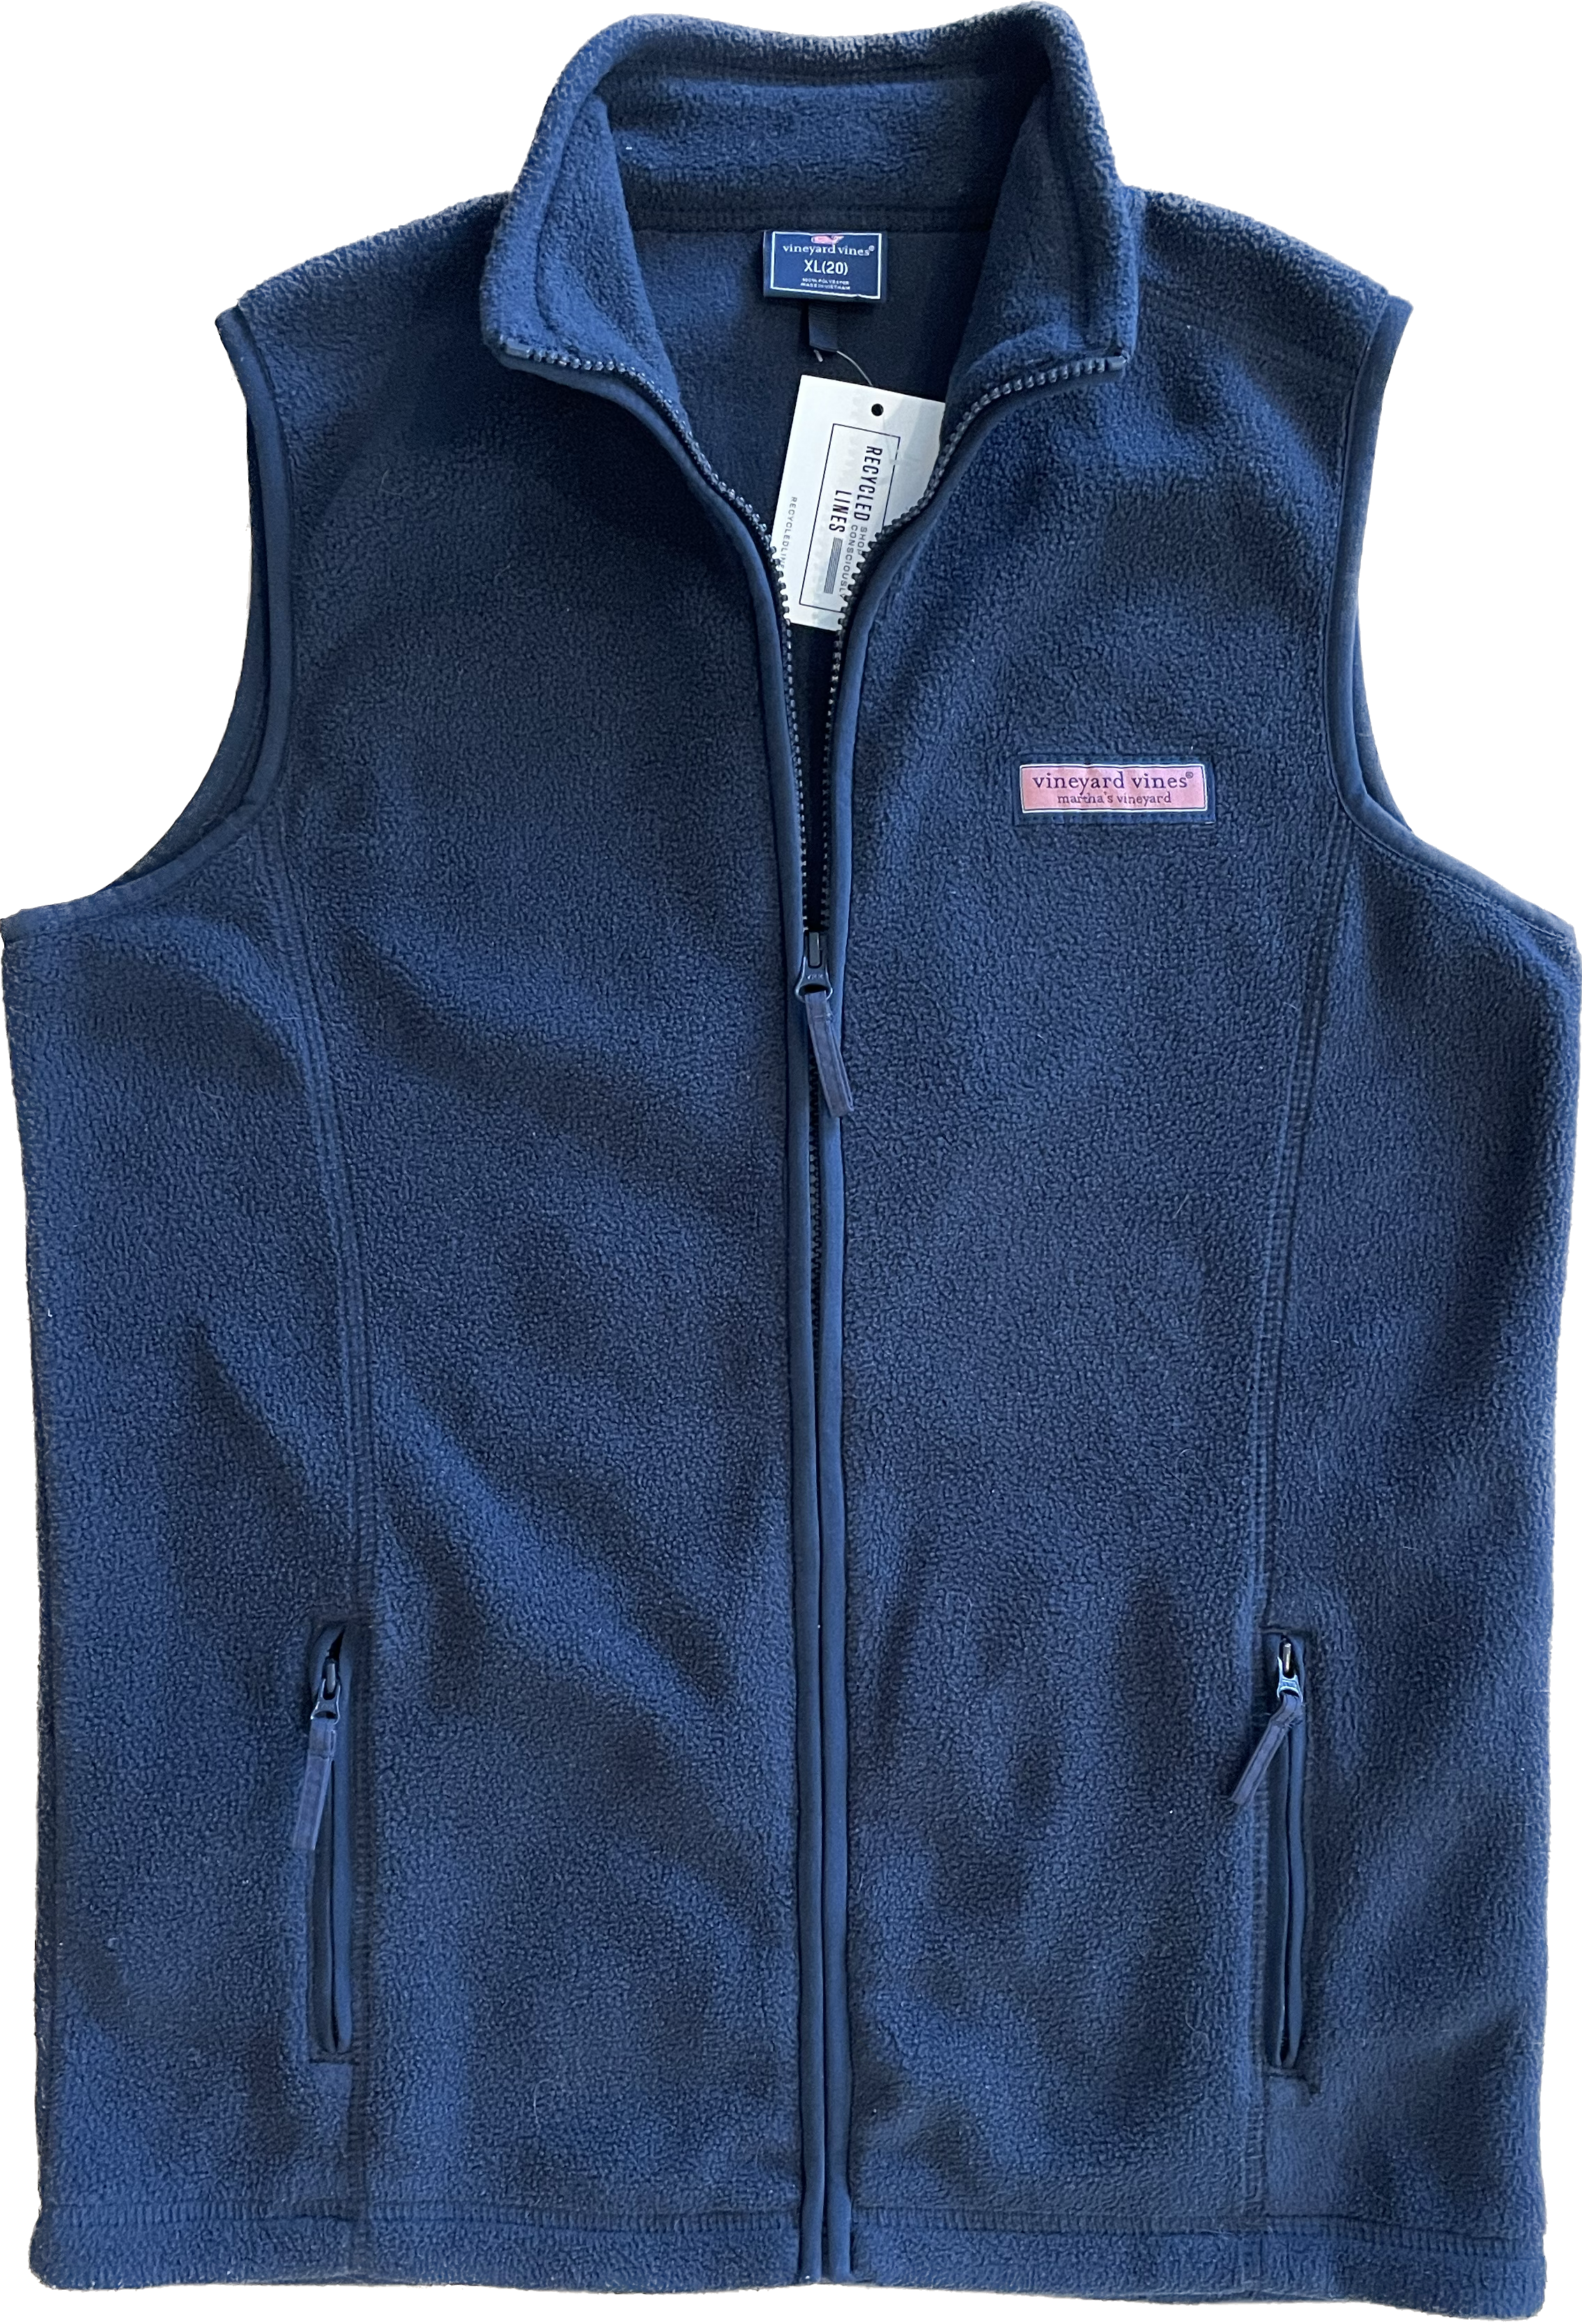 Vineyard Vines Fleece Vest, Navy Boys Size XL (20)